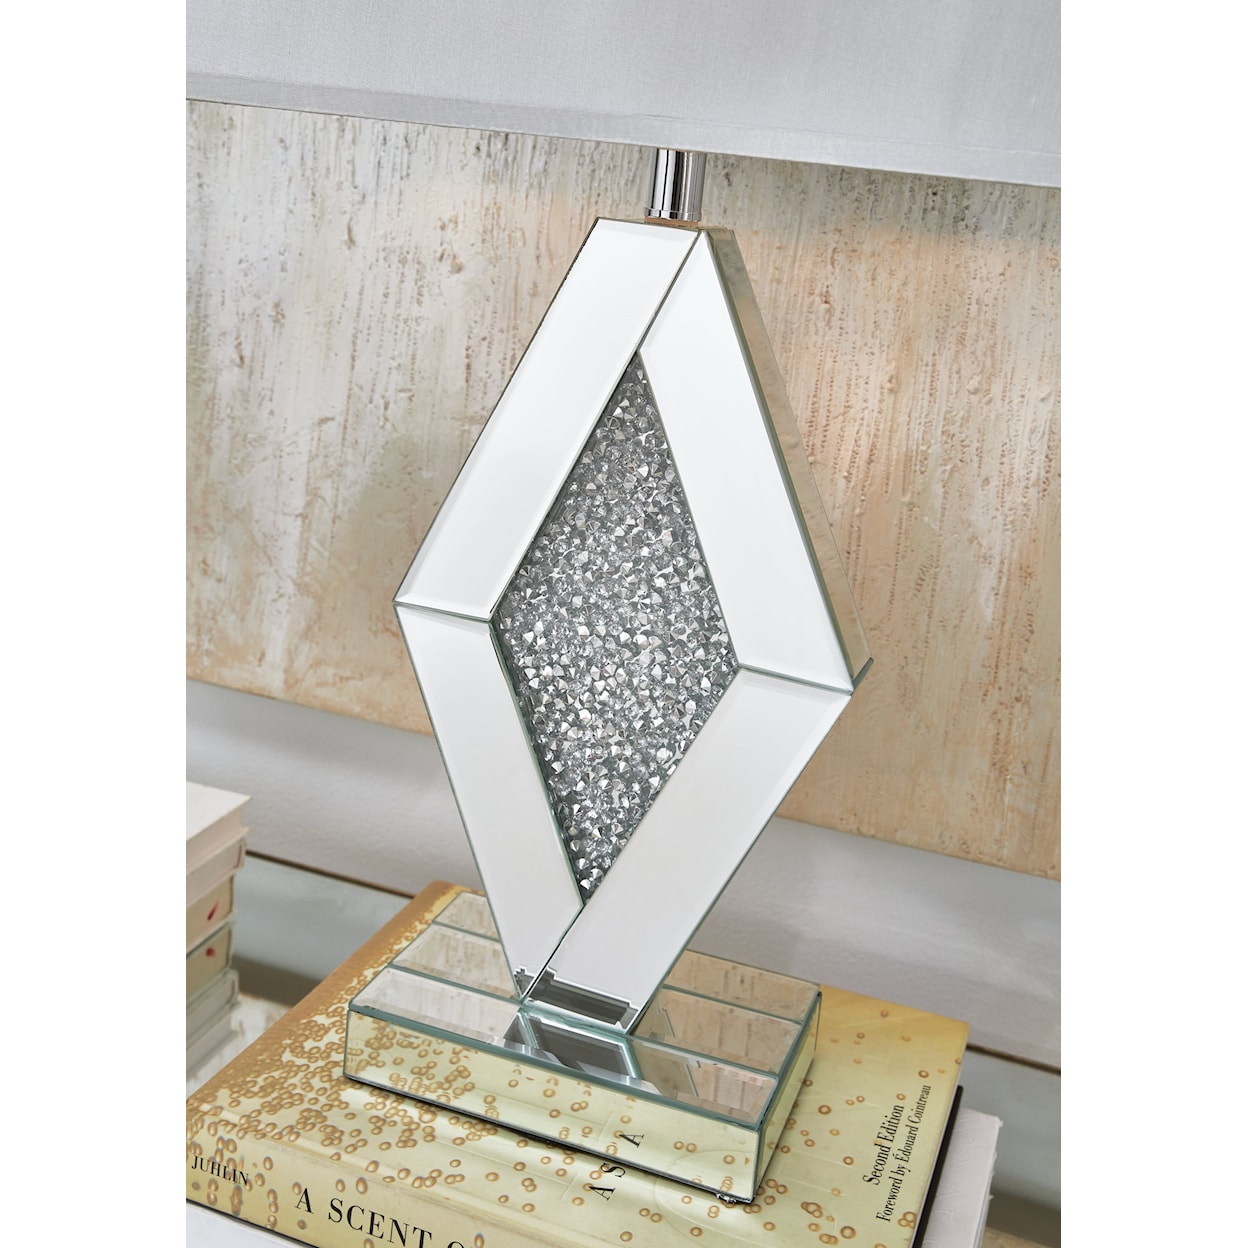 Ashley Signature Design Prunella Mirror Table Lamp